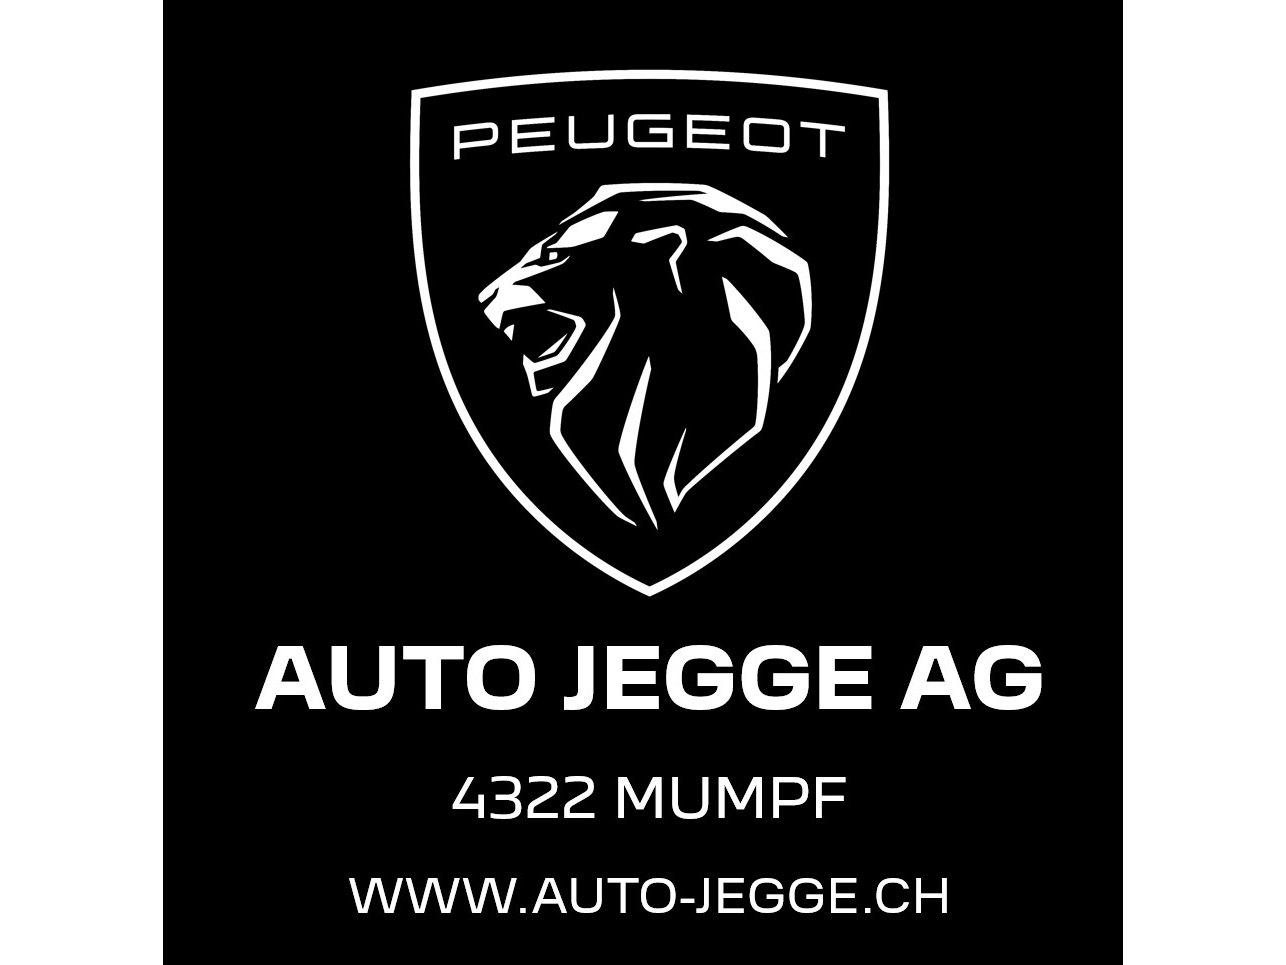 Auto Jegge AG, Mumpf